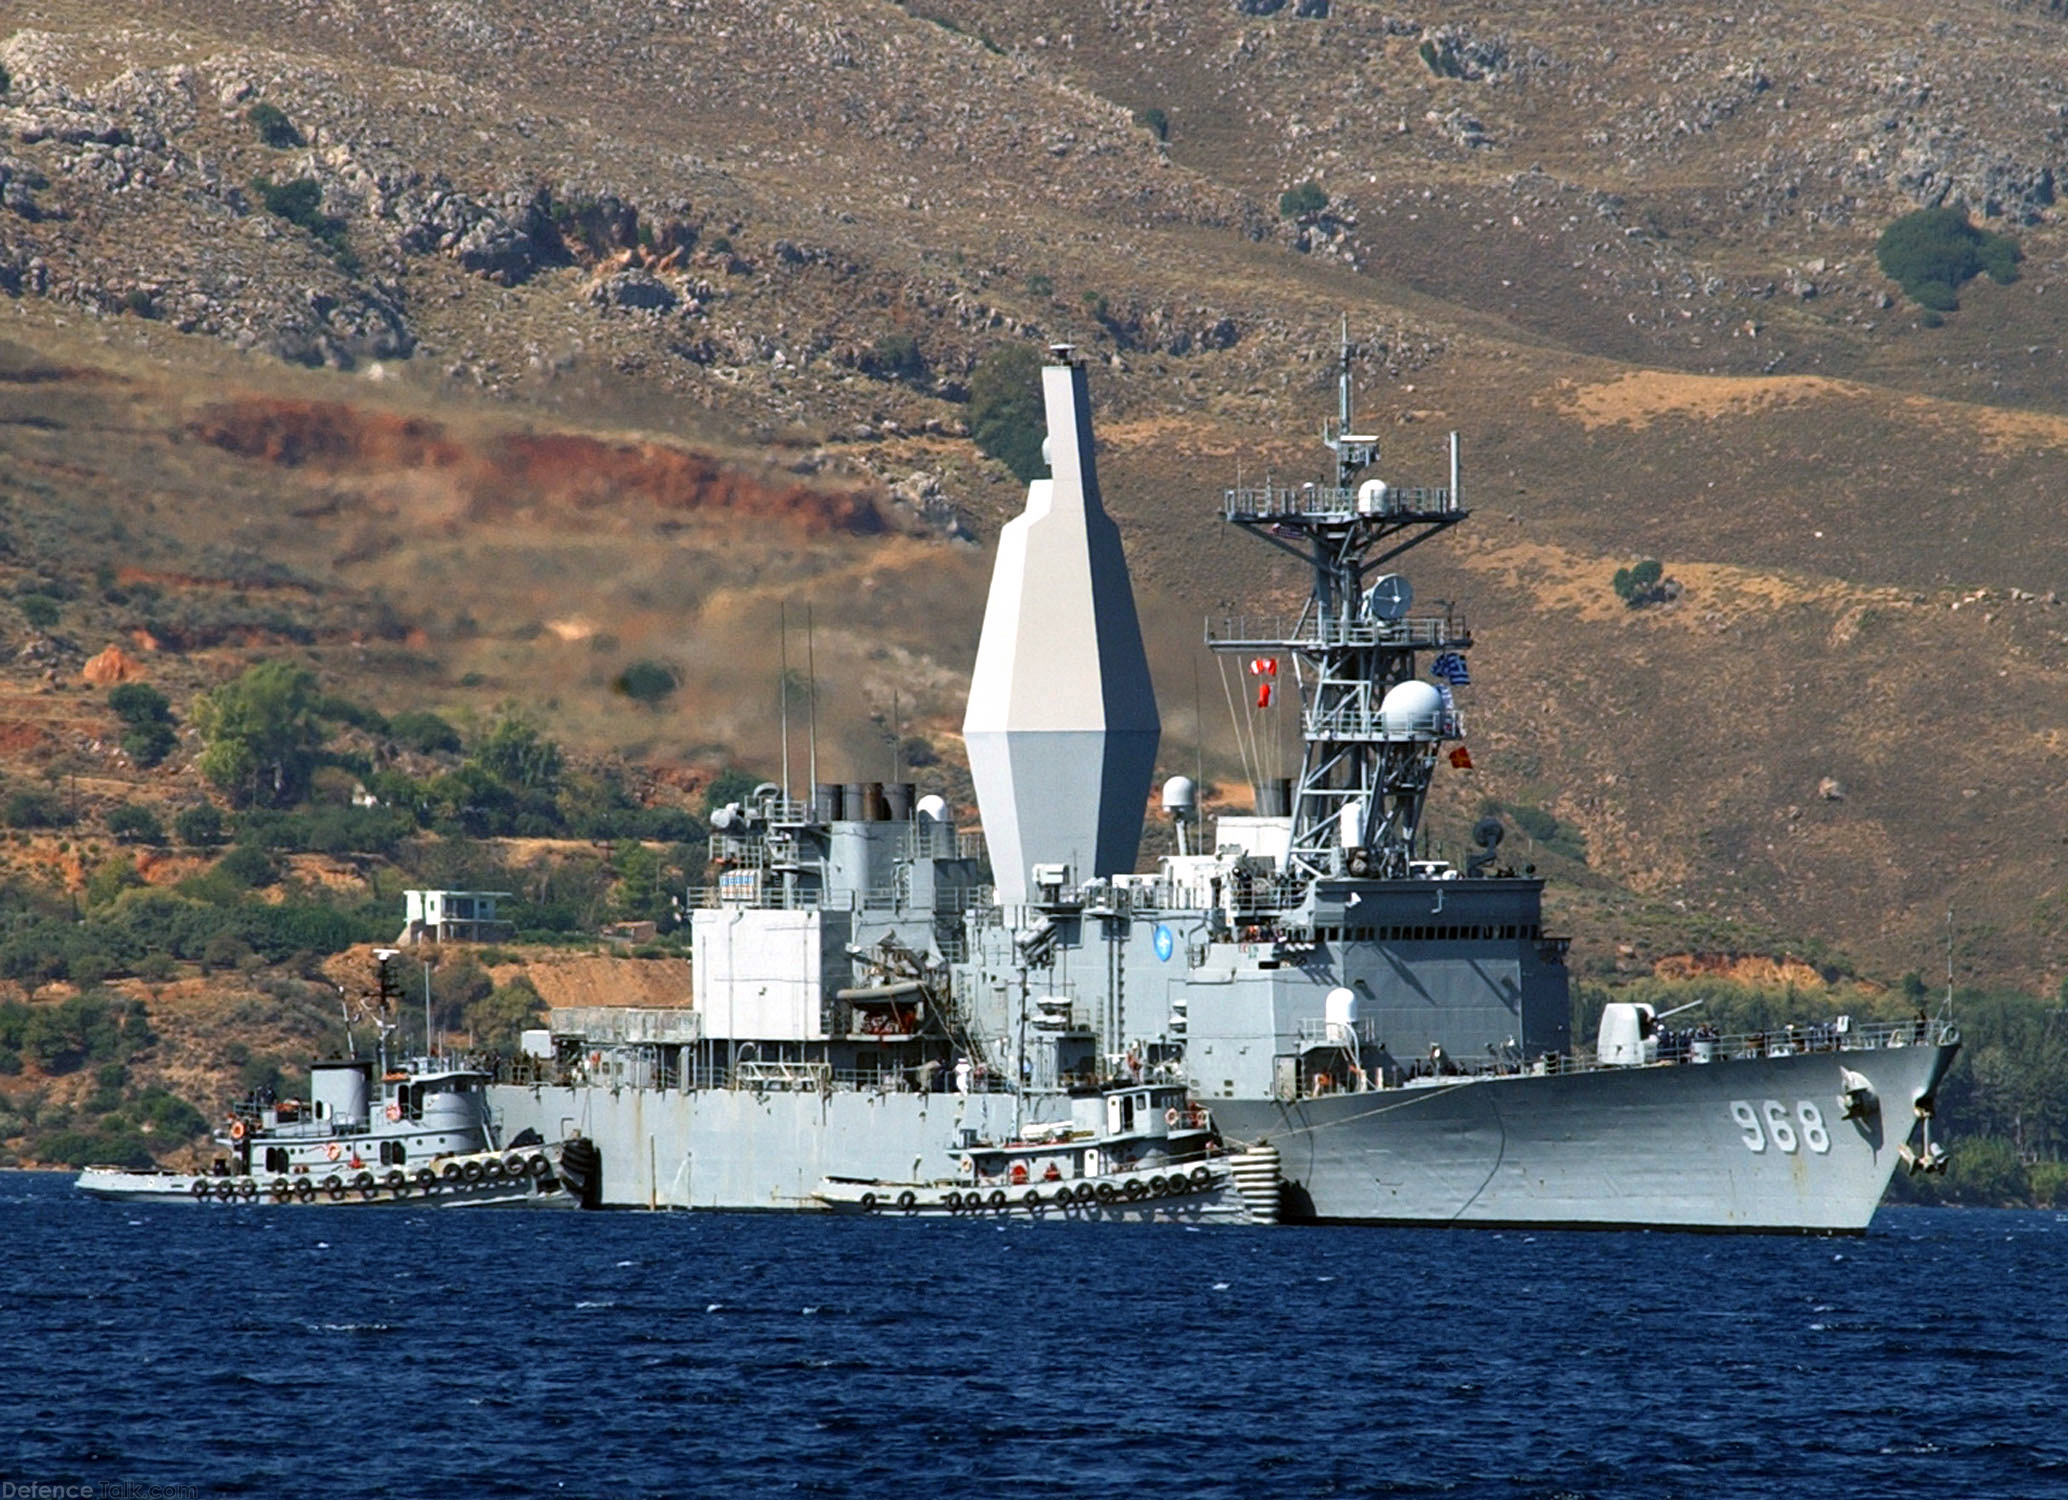 Spruance-class destroyer, DDG-968